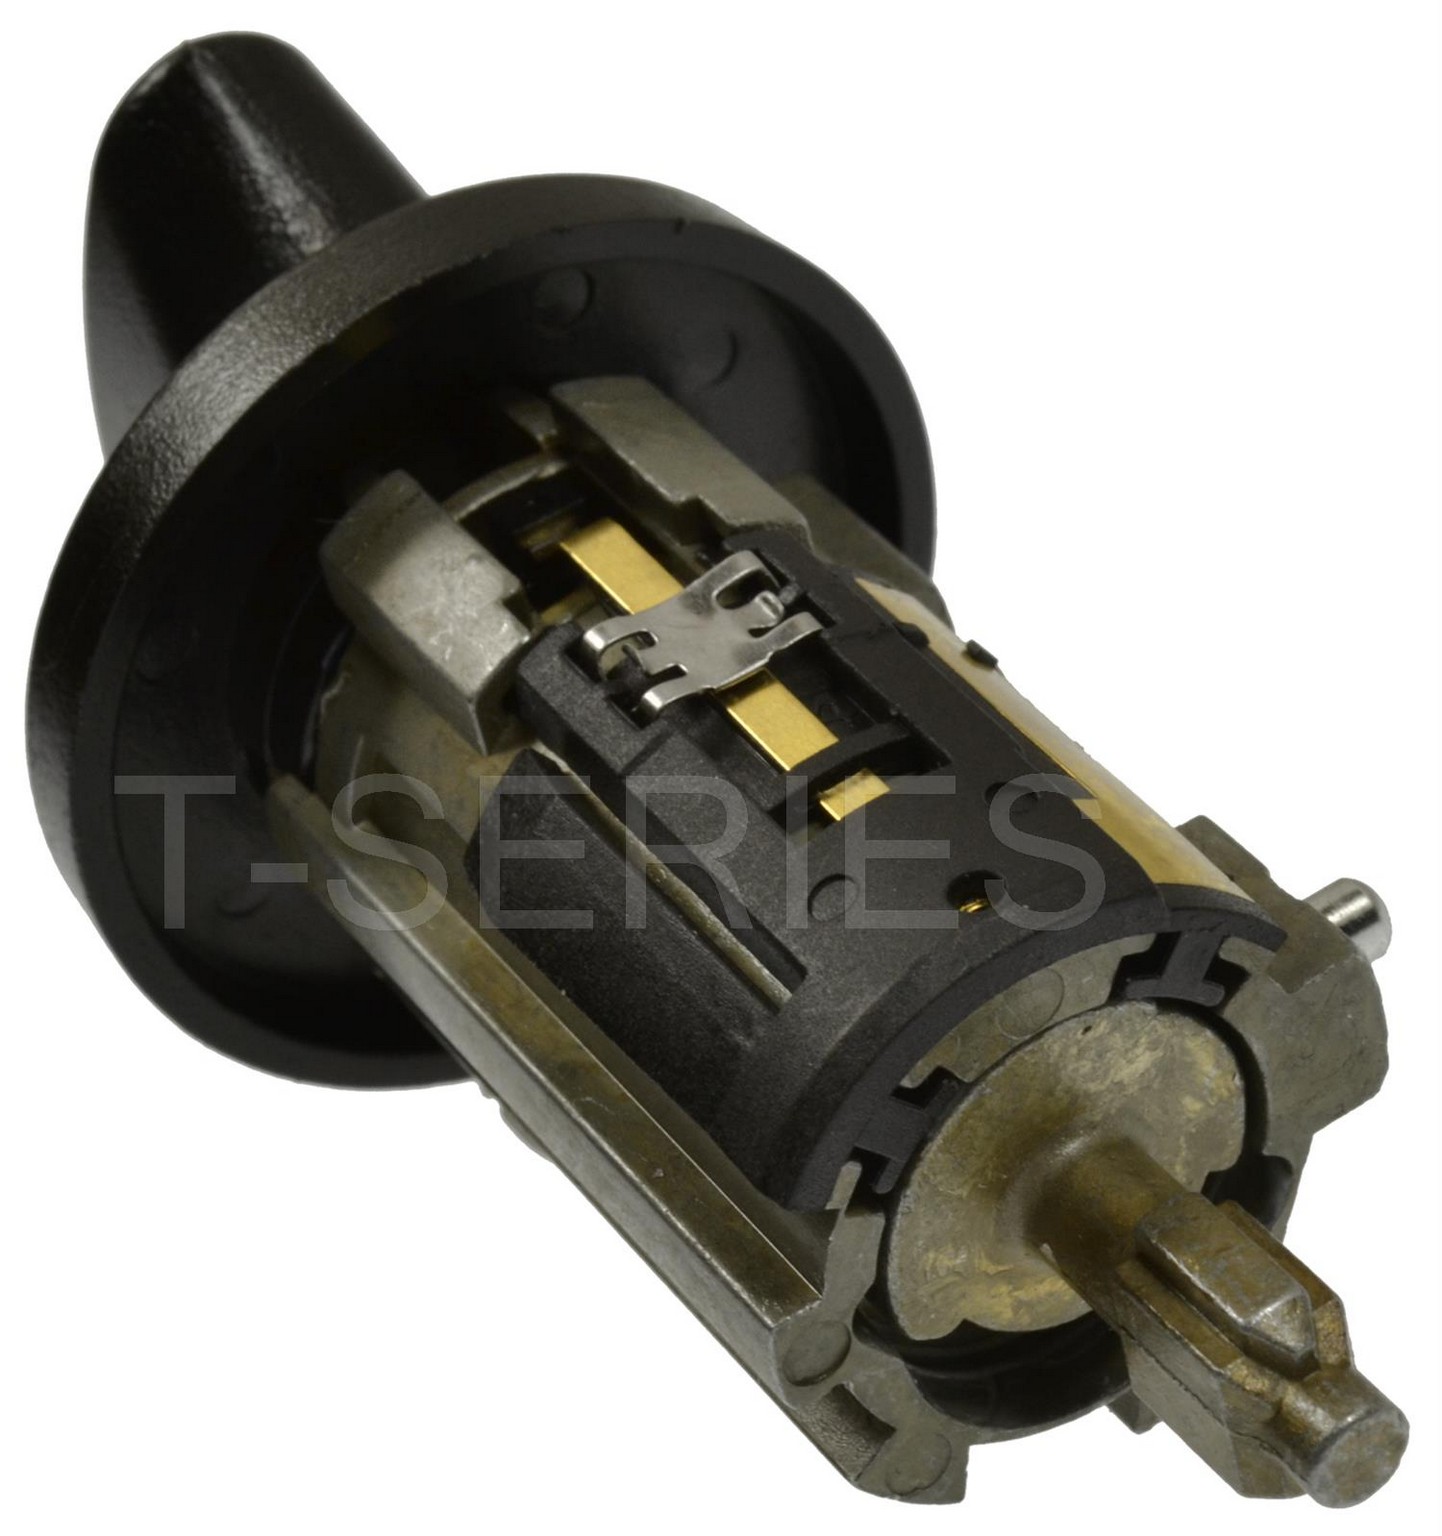 Ignition Lock Cylinder Standard US322LT